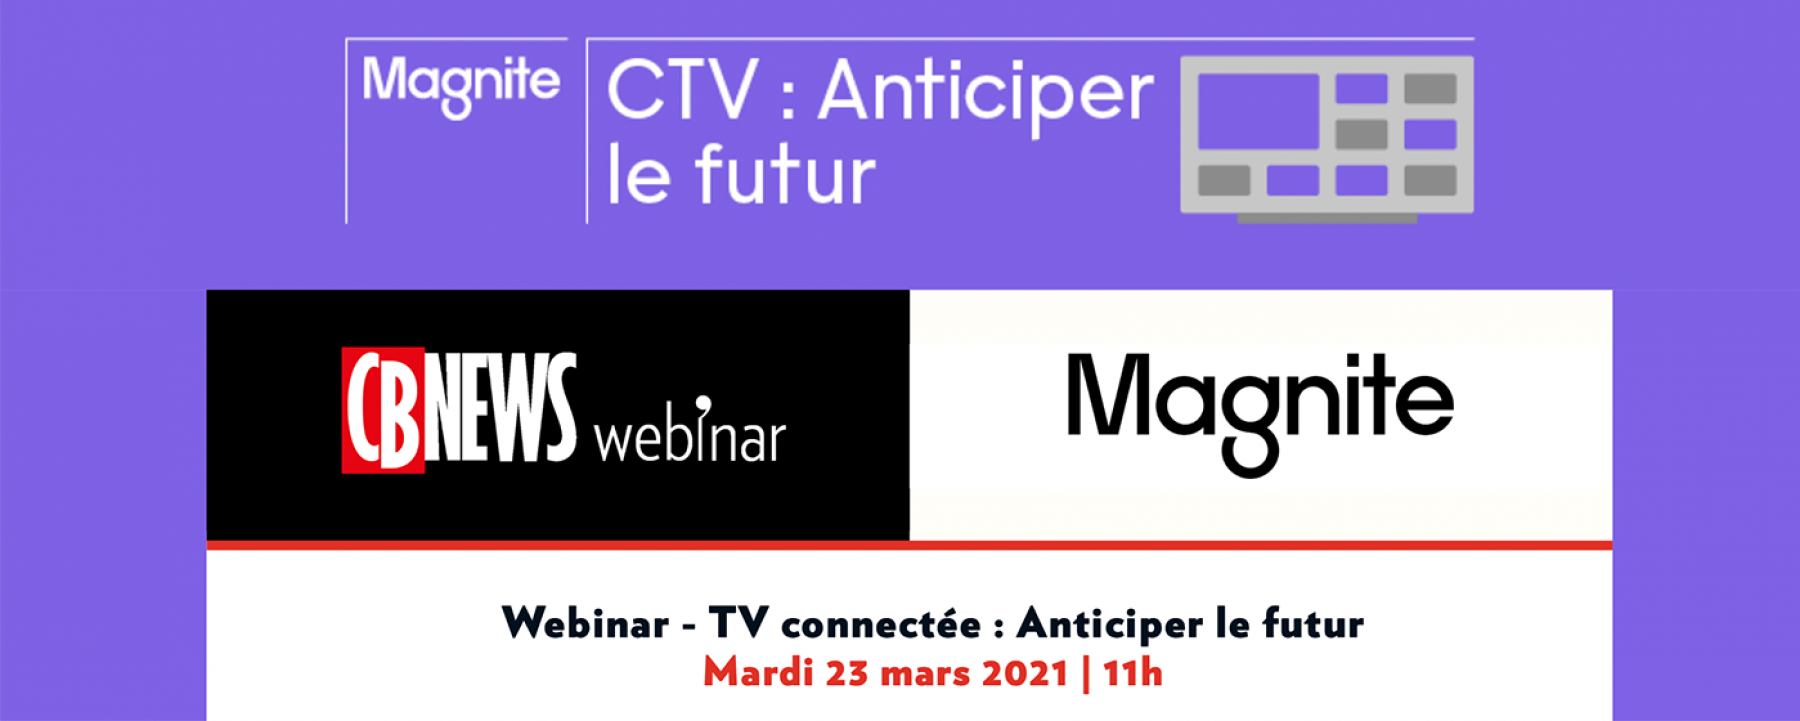 TV connectée : Anticiper le futur, un webinar par CB News et Magnite le 23 mars 2021